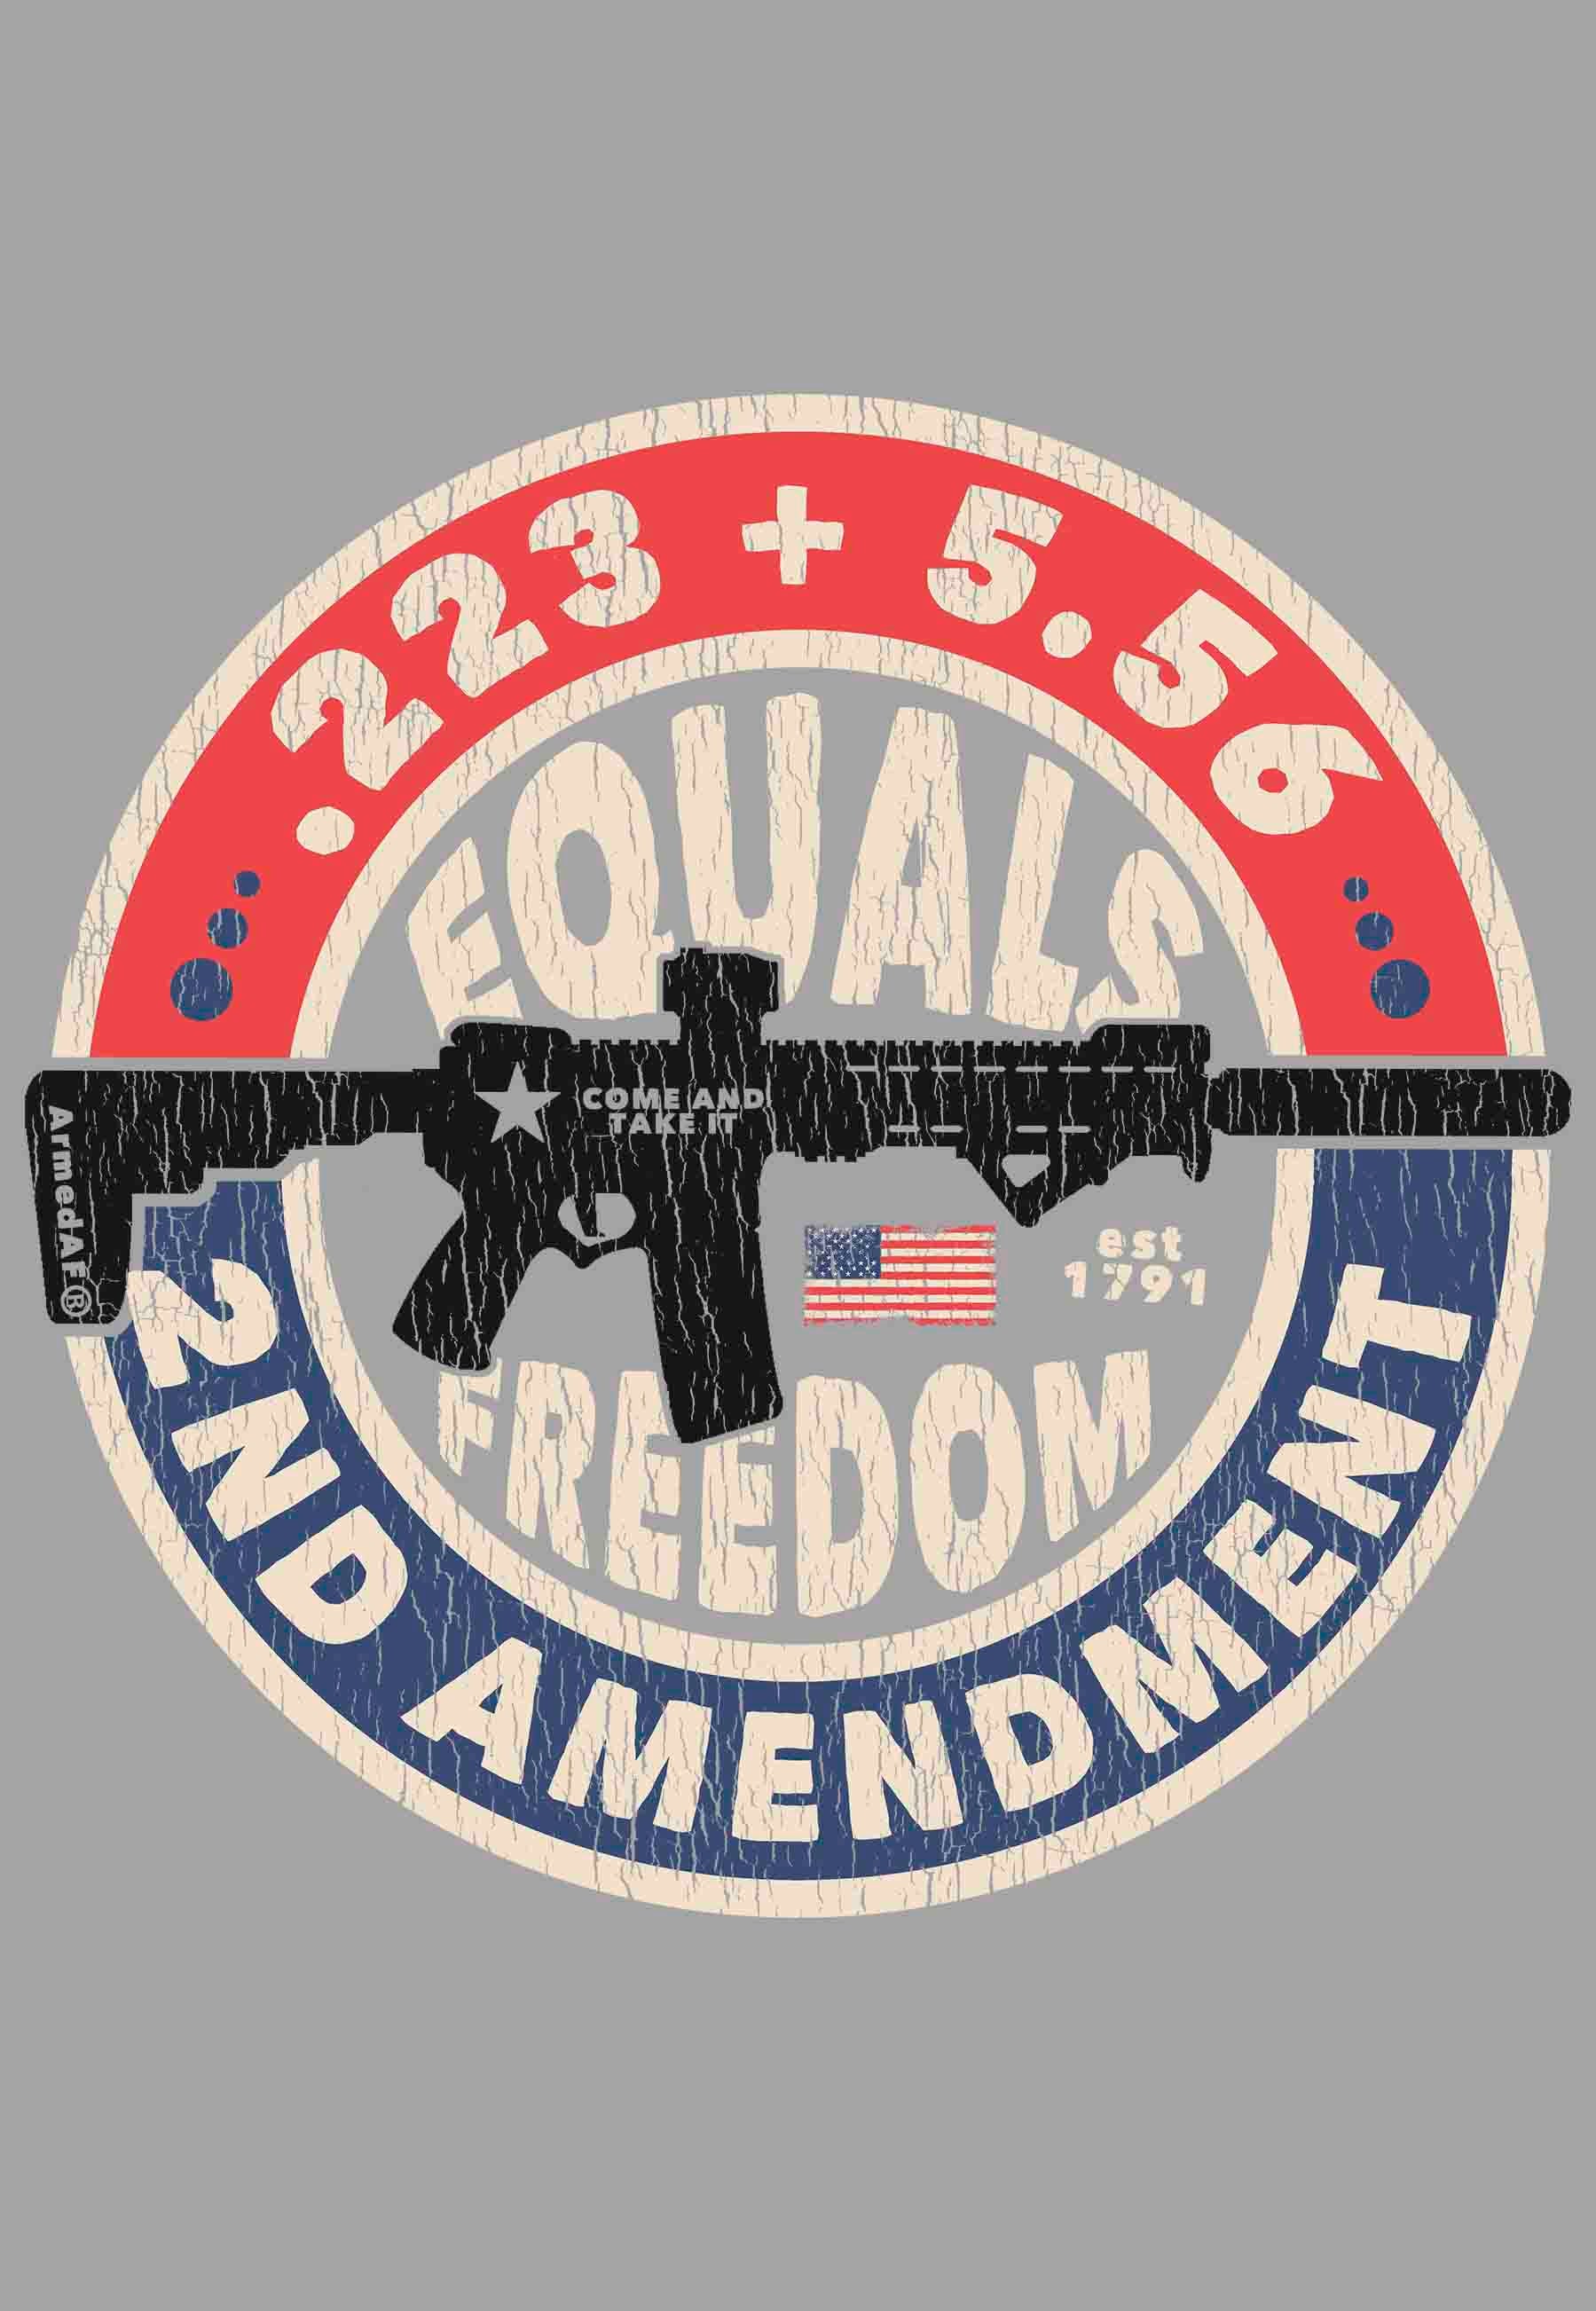 Second amenment equals freedom t-shirt design closeup